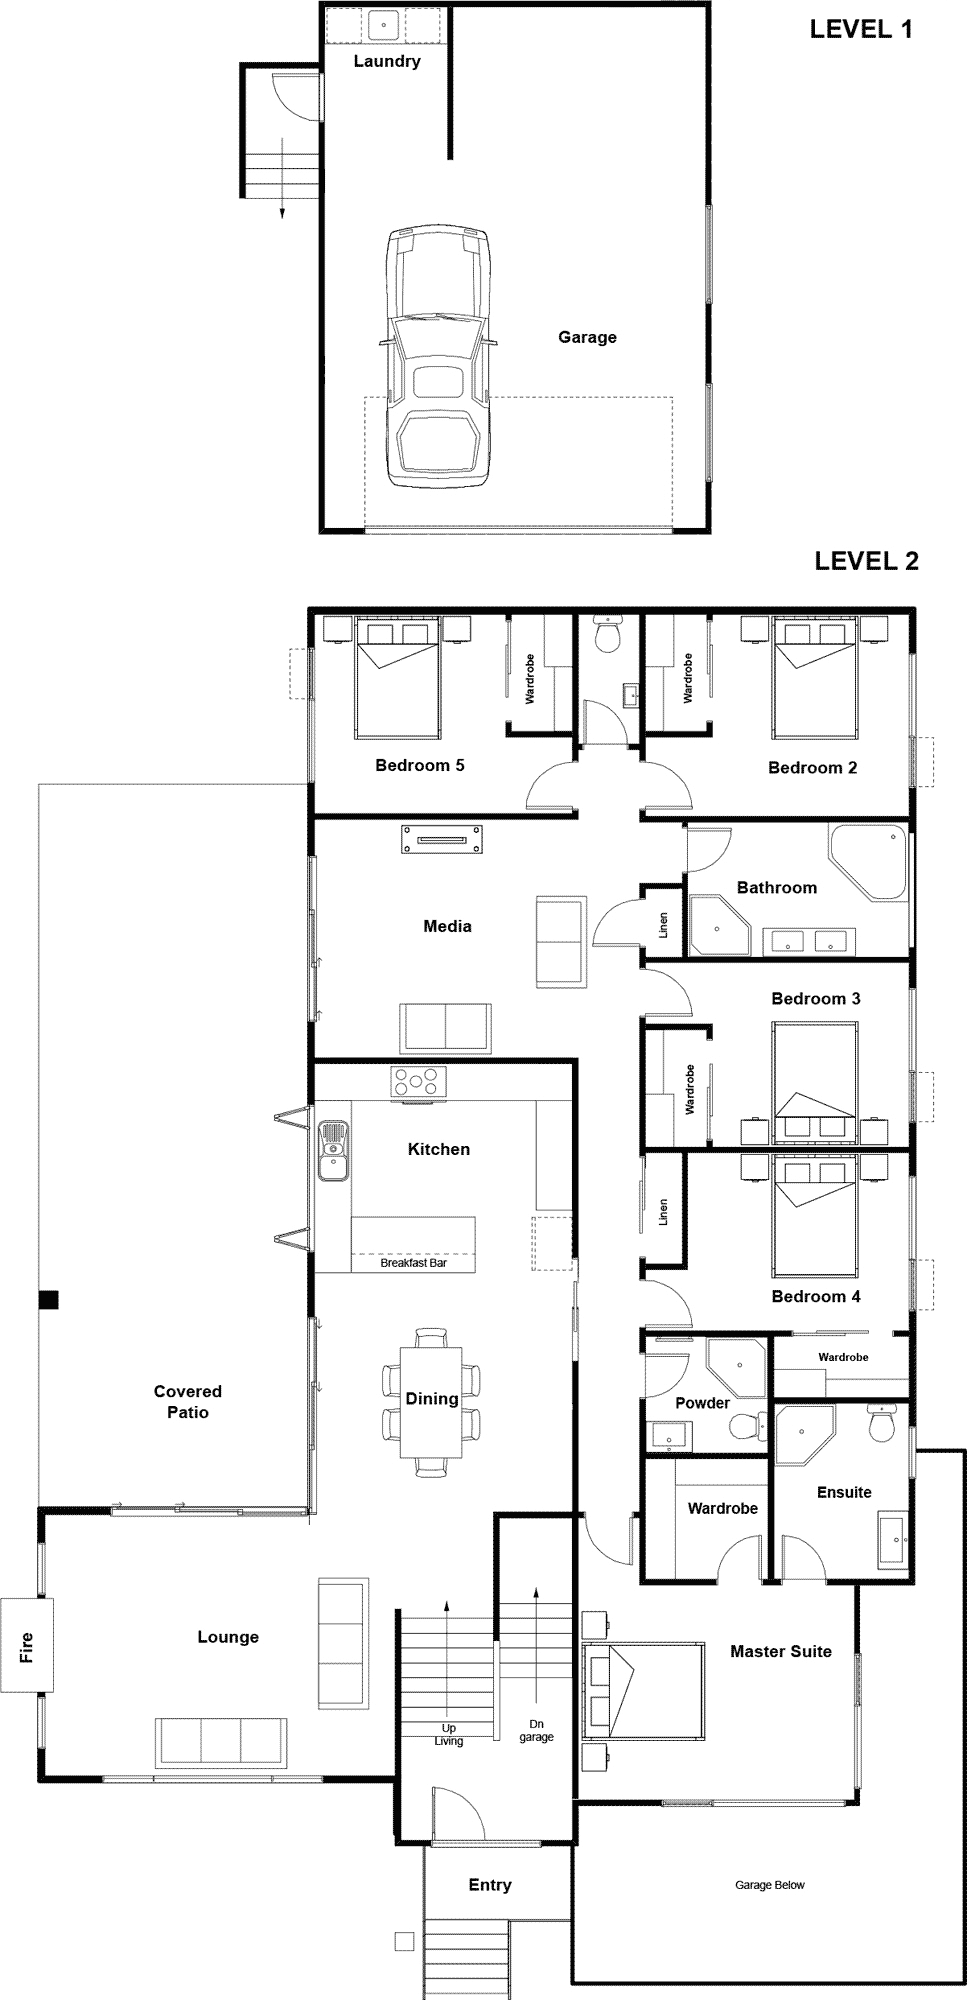 42 Pinkerton Place floor plan